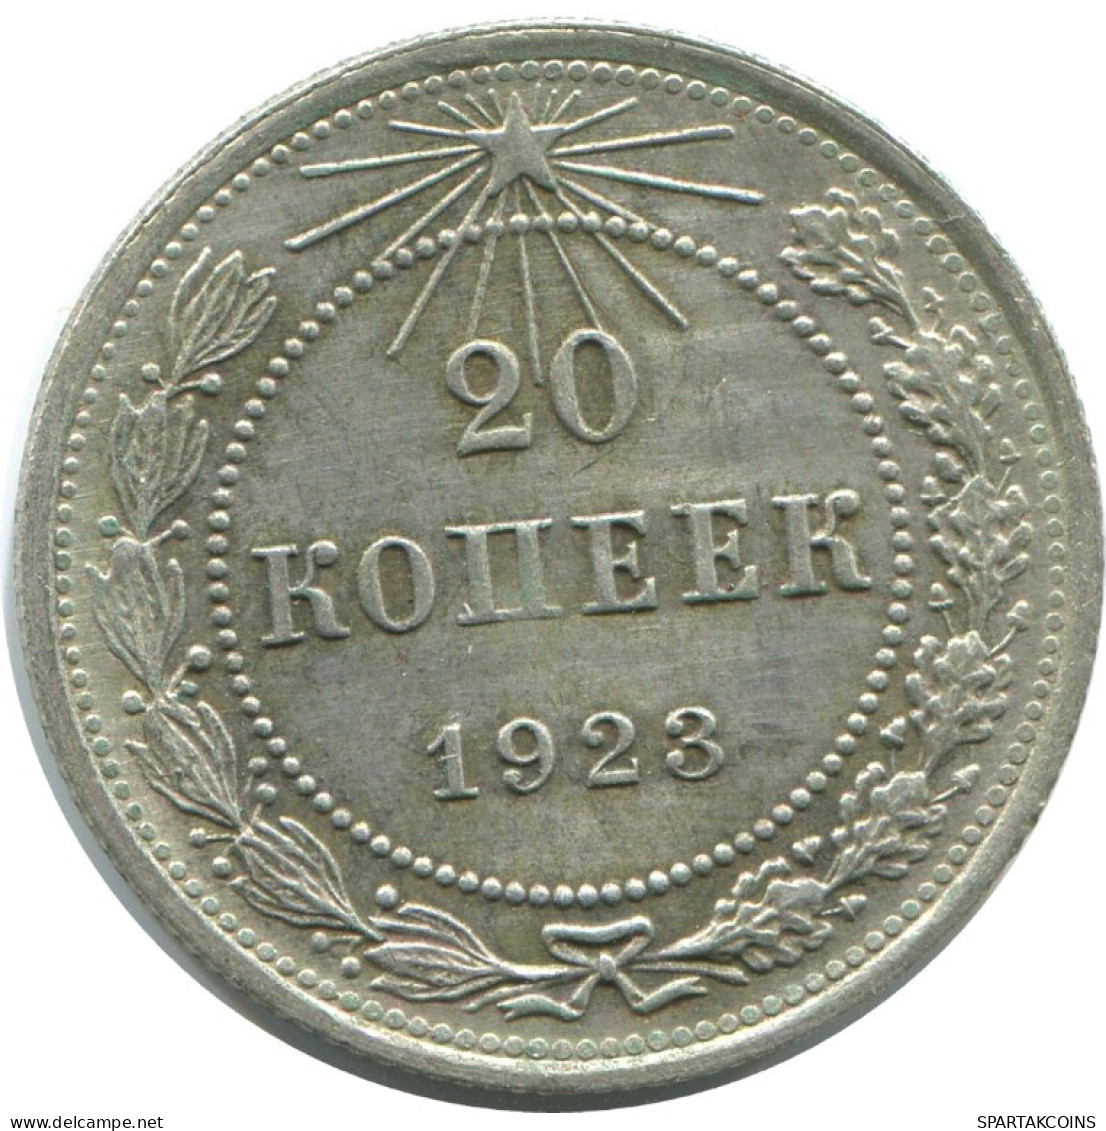 20 KOPEKS 1923 RUSSIA RSFSR SILVER Coin HIGH GRADE #AF508.4.U.A - Russland